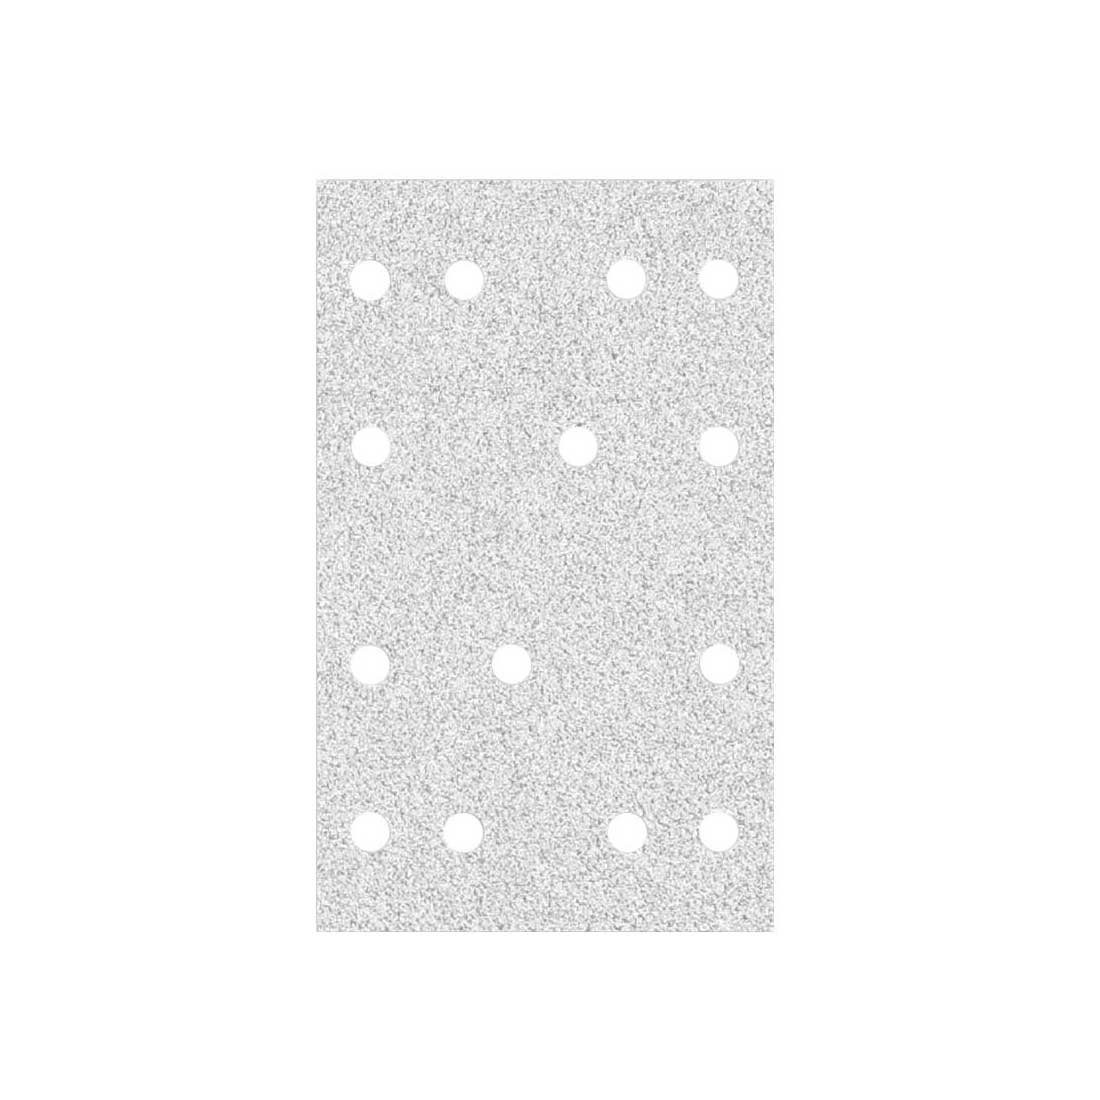 MioTools Schleifpapier 133 x 80 mm 14-Loch Klett-Schleifblätter für Schwingschleifer, Normalkorund, 50 Stk., K180